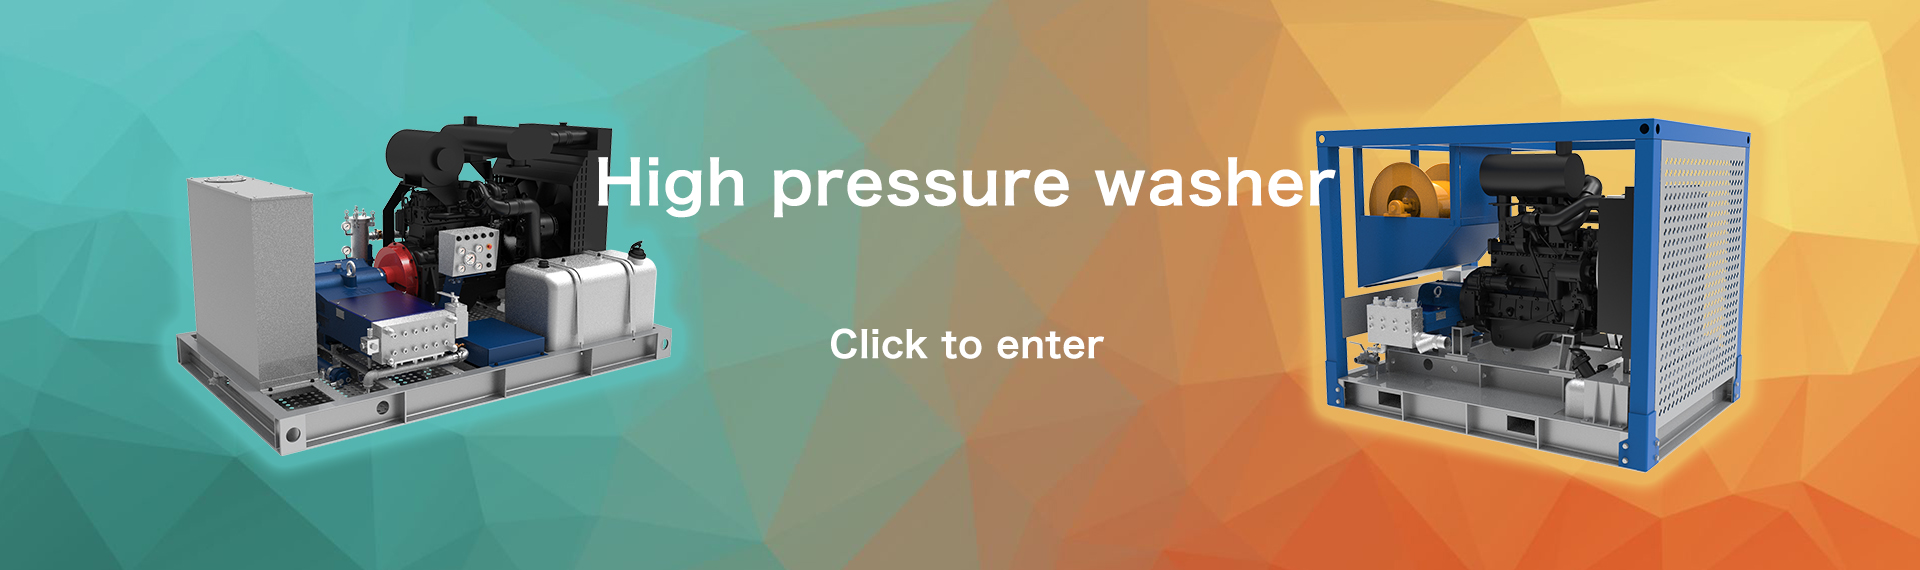 High pressure washer banner